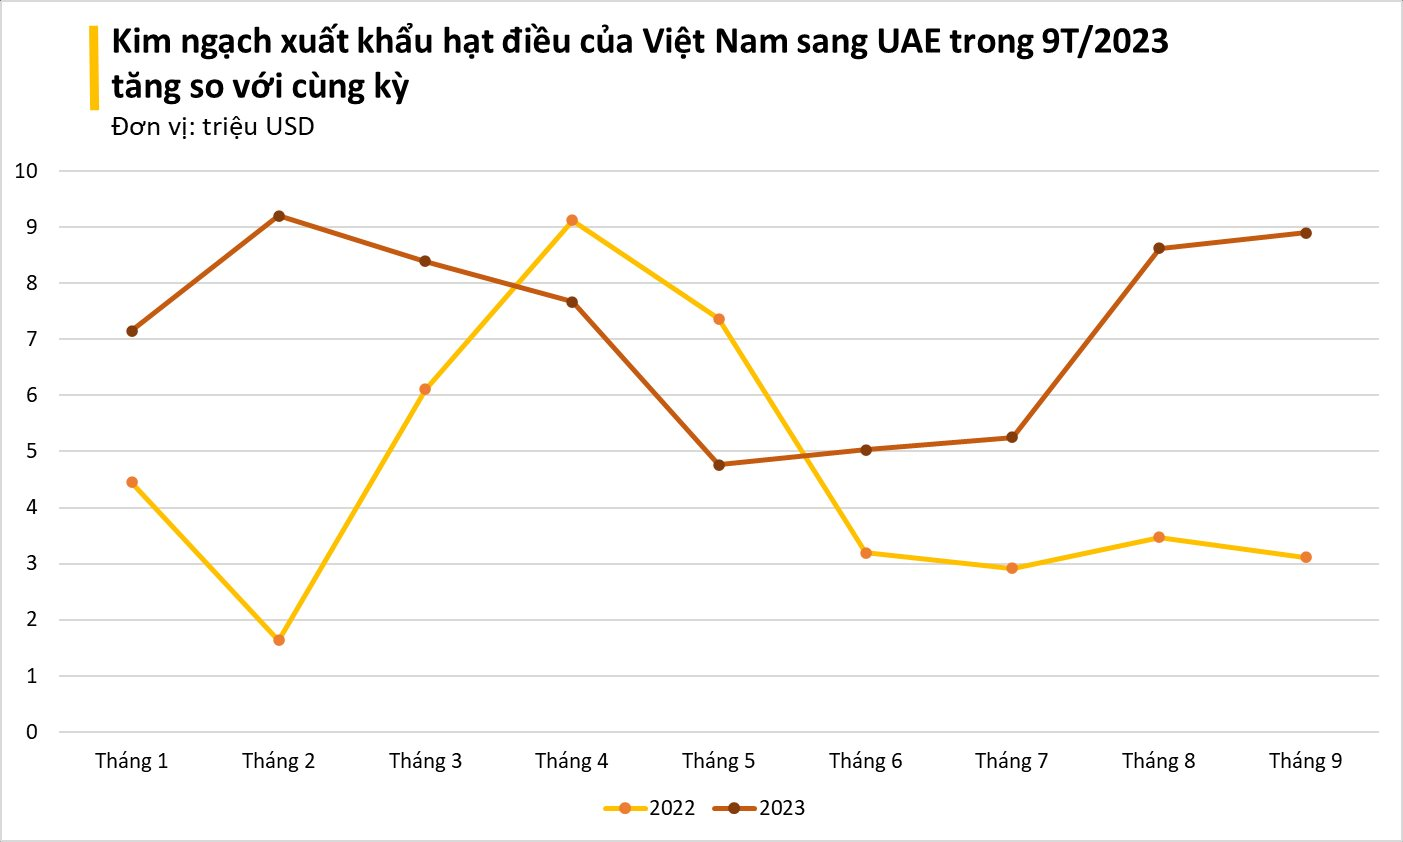 'Tinh túy' của nông sản Việt được các đại gia dầu mỏ cực kỳ ưa chuộng: xuất khẩu tăng mạnh 3 chữ số, tổng thu về hơn 2 tỷ USD - Ảnh 4.